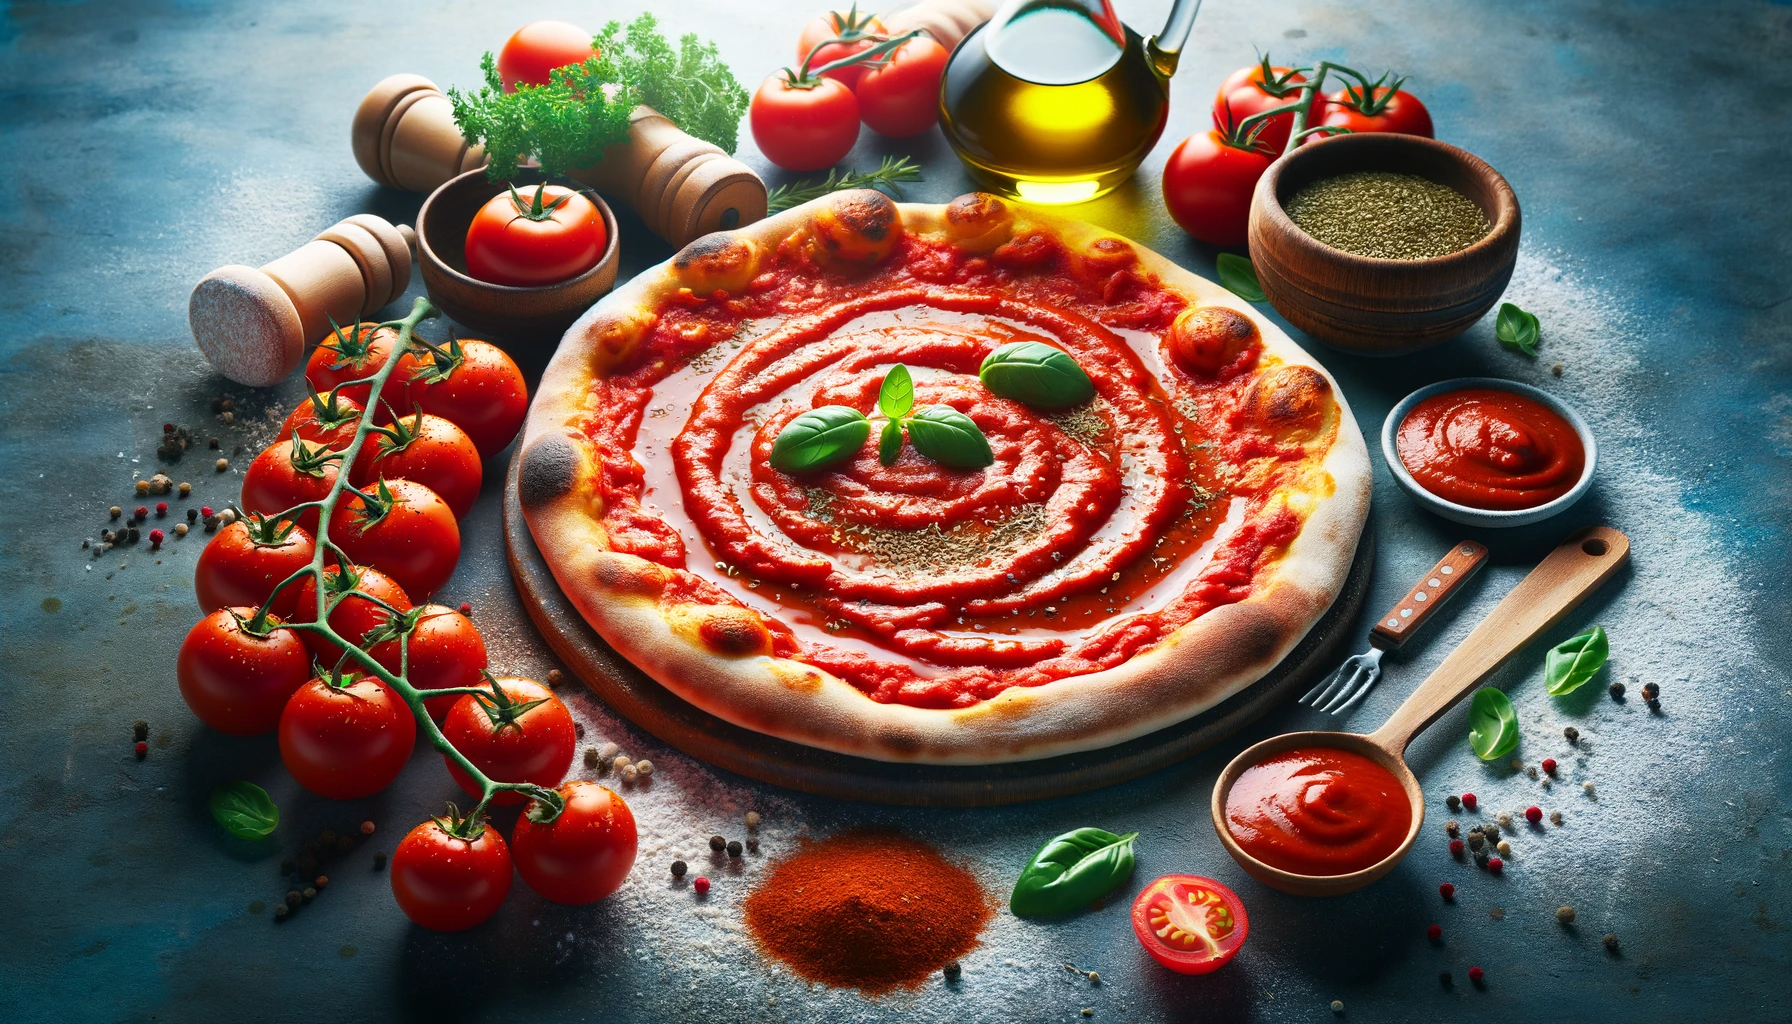 Une pizza entouré de tomate pour mettre l'accent sur la sauce tomate.